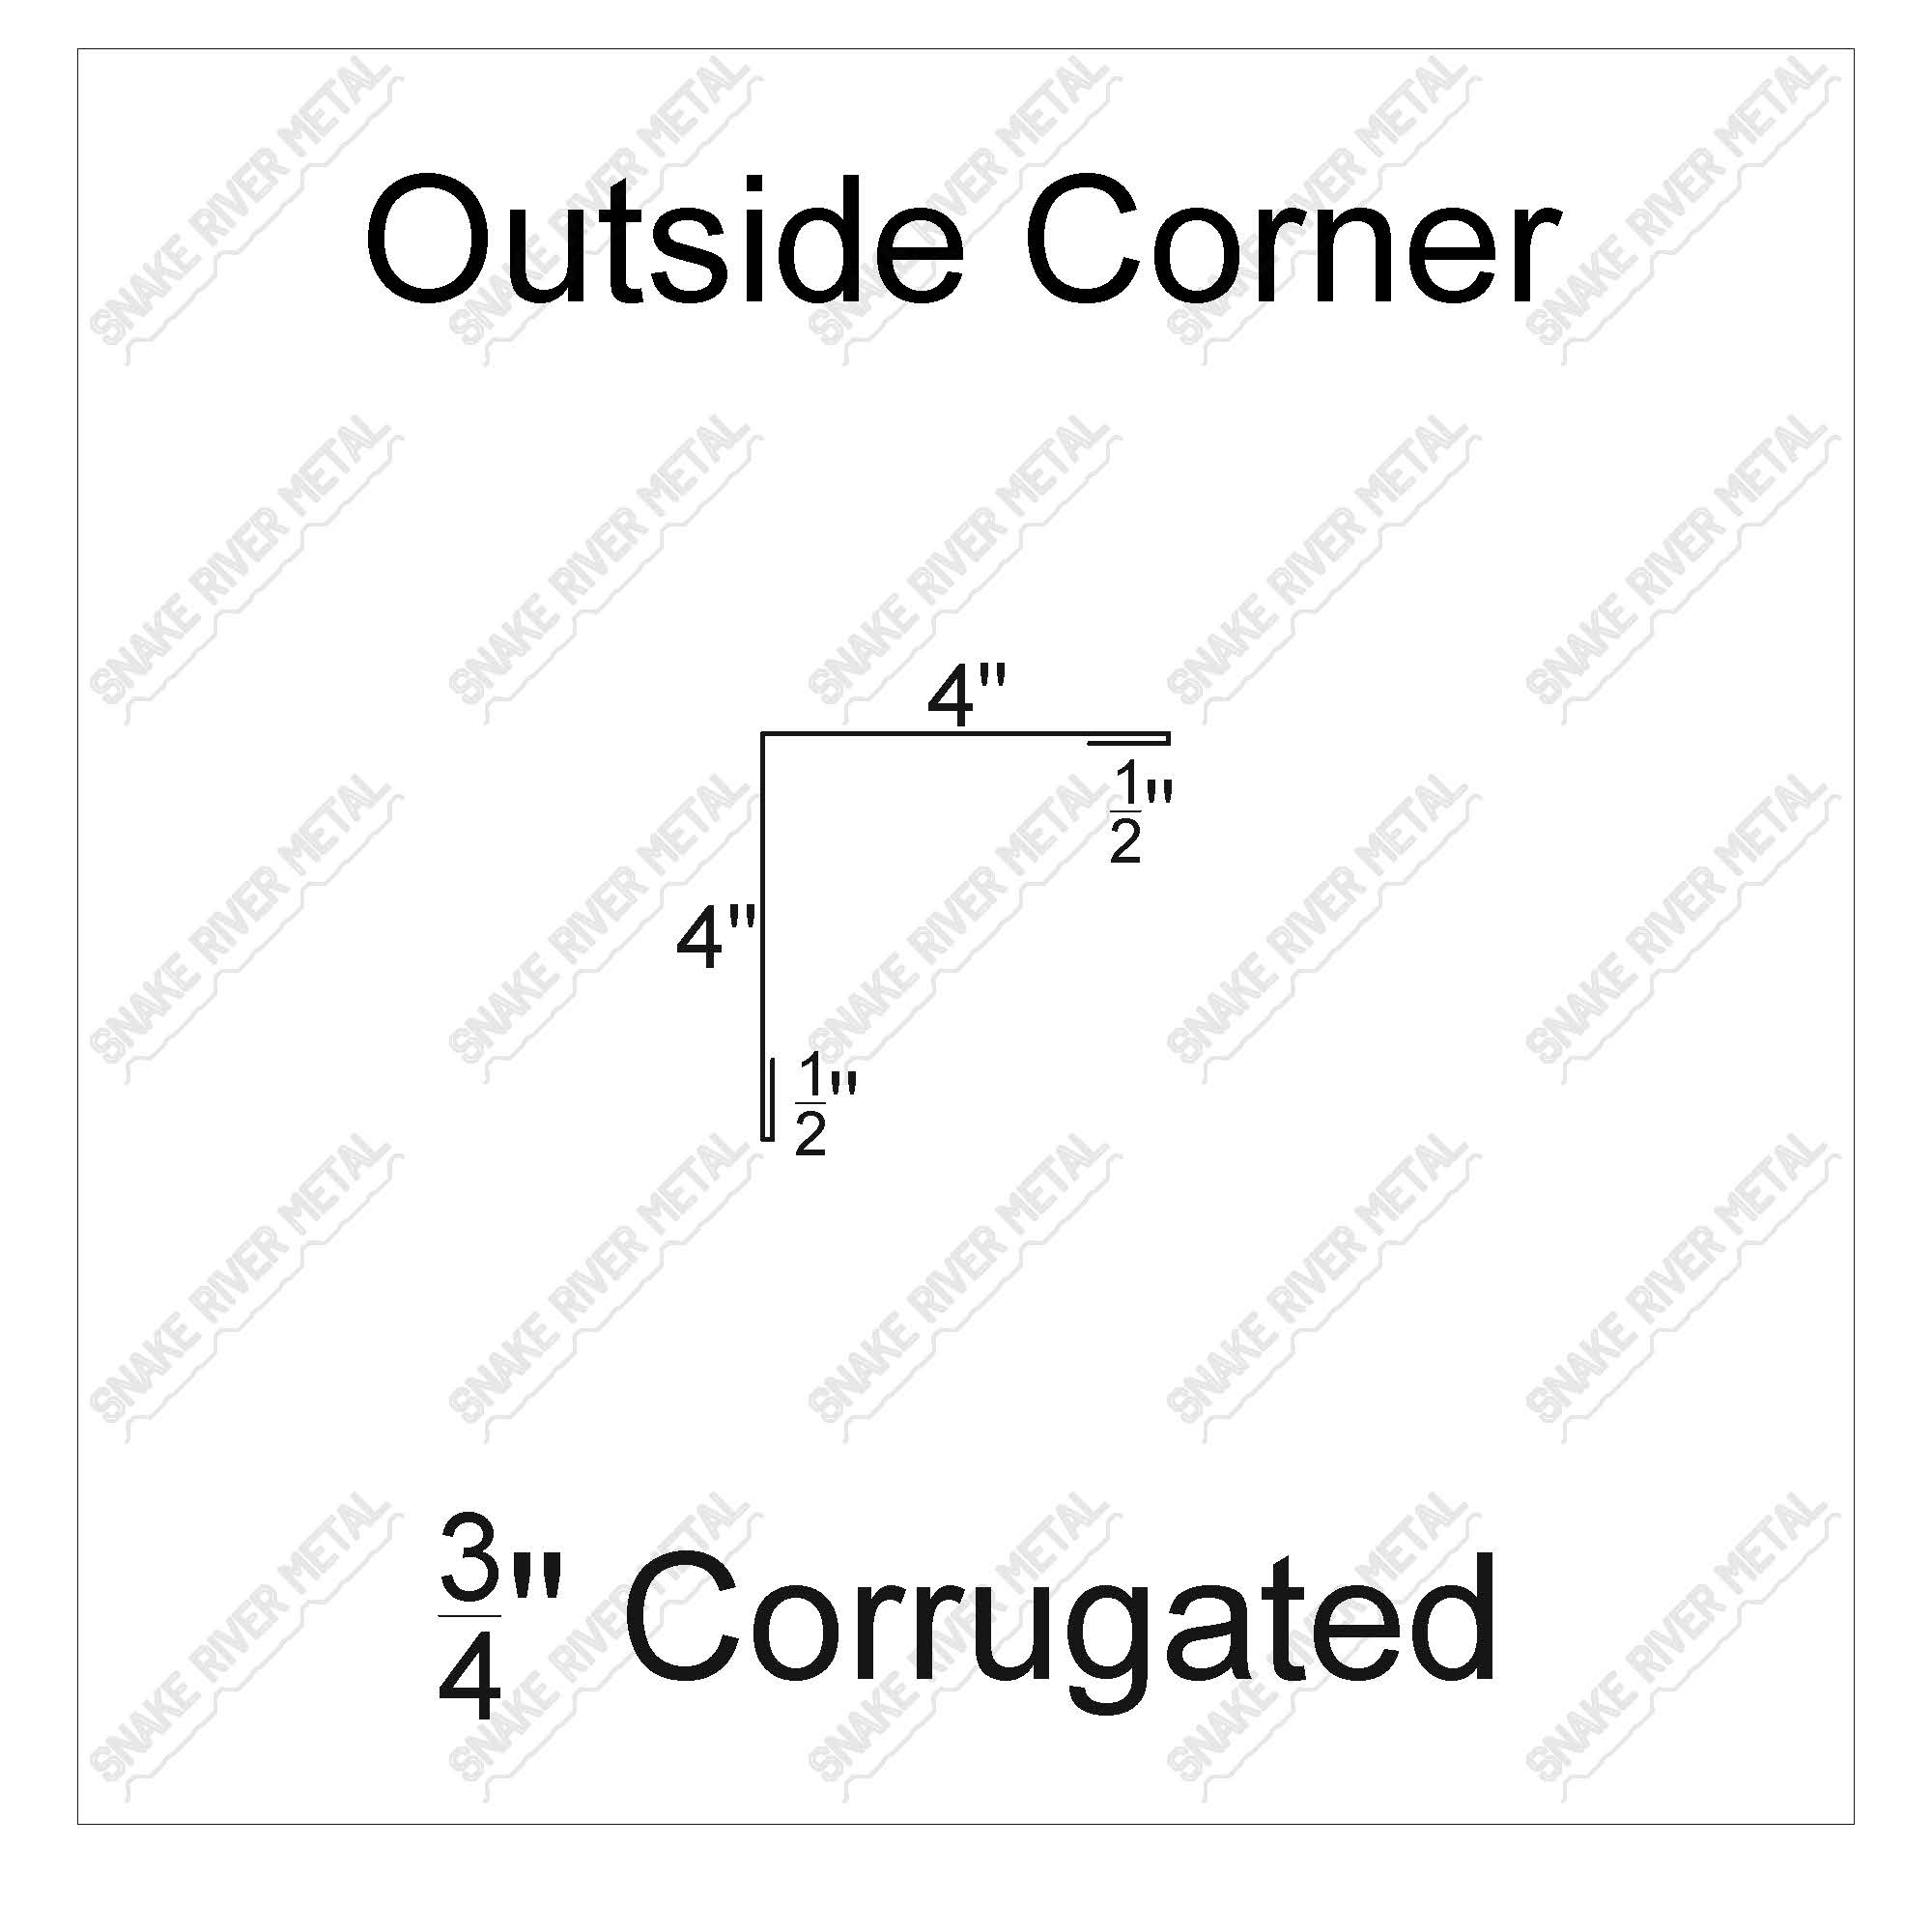 Outside Corner - Corrugated Trim